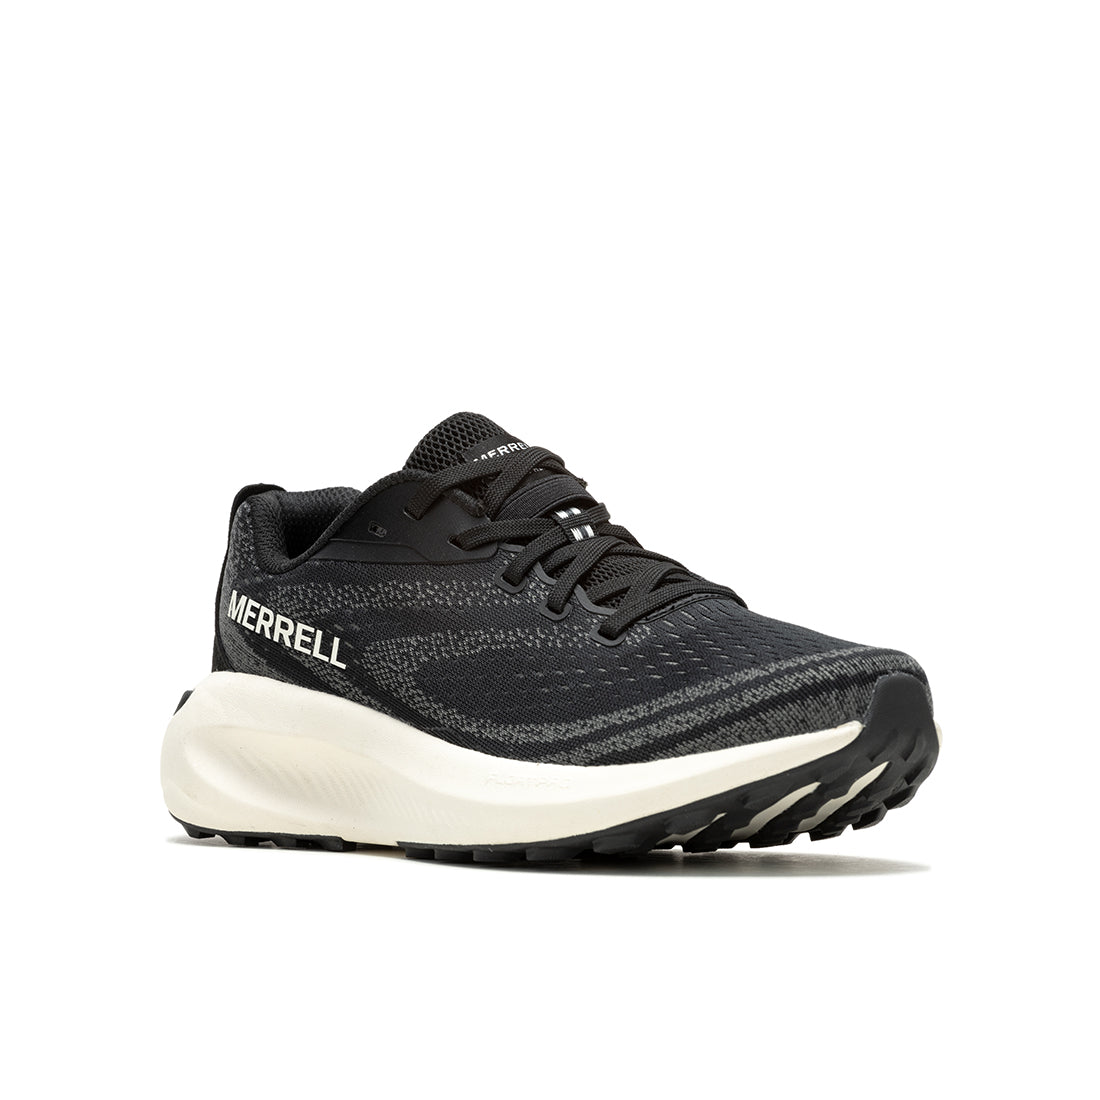 Morphlite – Black/White Womens Trail Running Shoes